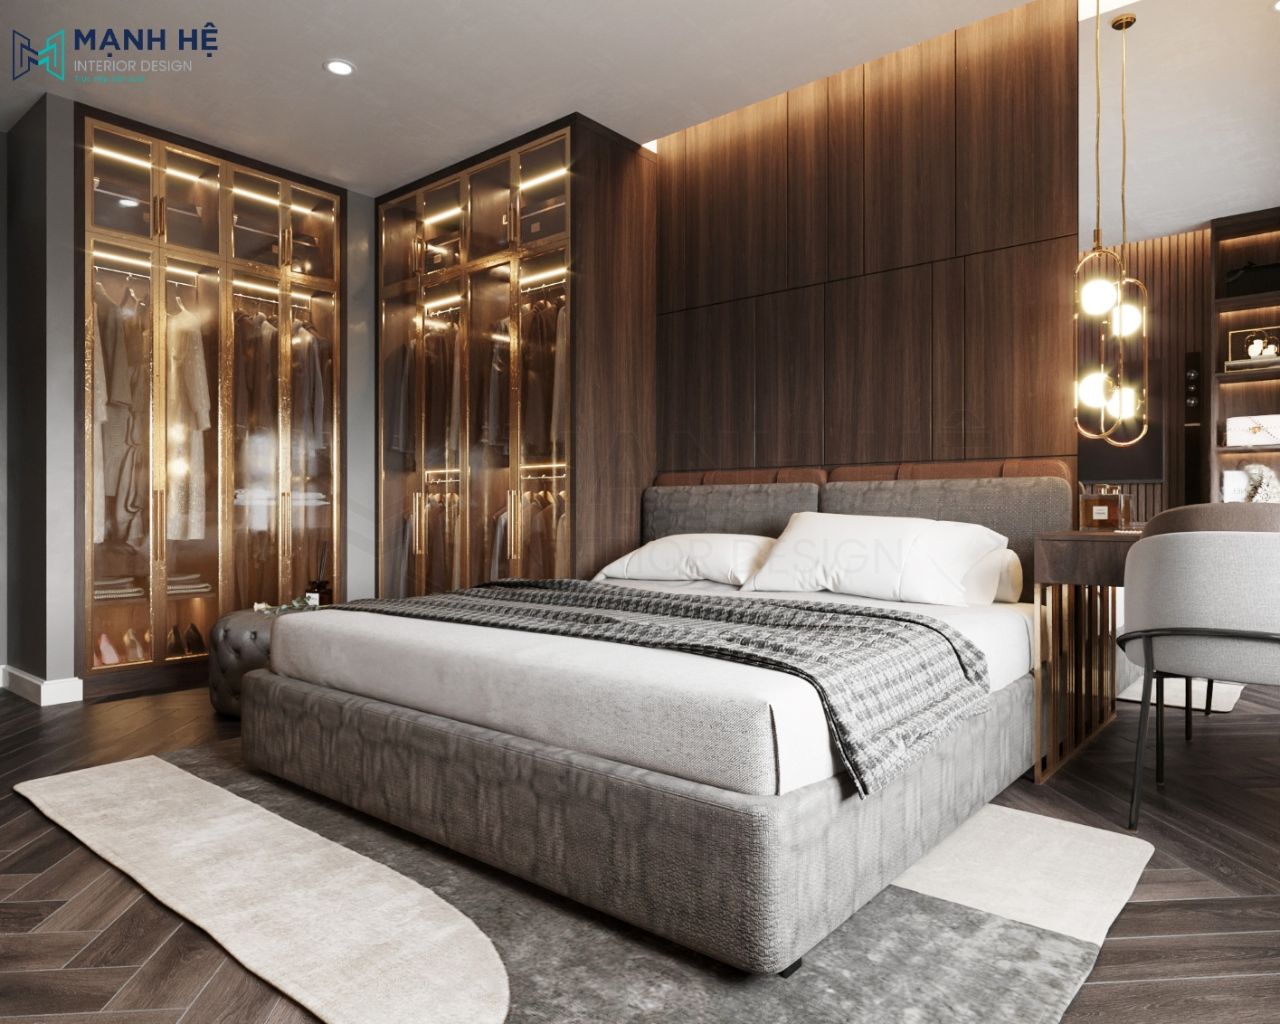 Giường ngủ lơn kết hợp với thảm trải sàn bằng nhung tạo thành khối với tone xám vô cùng sang trọng